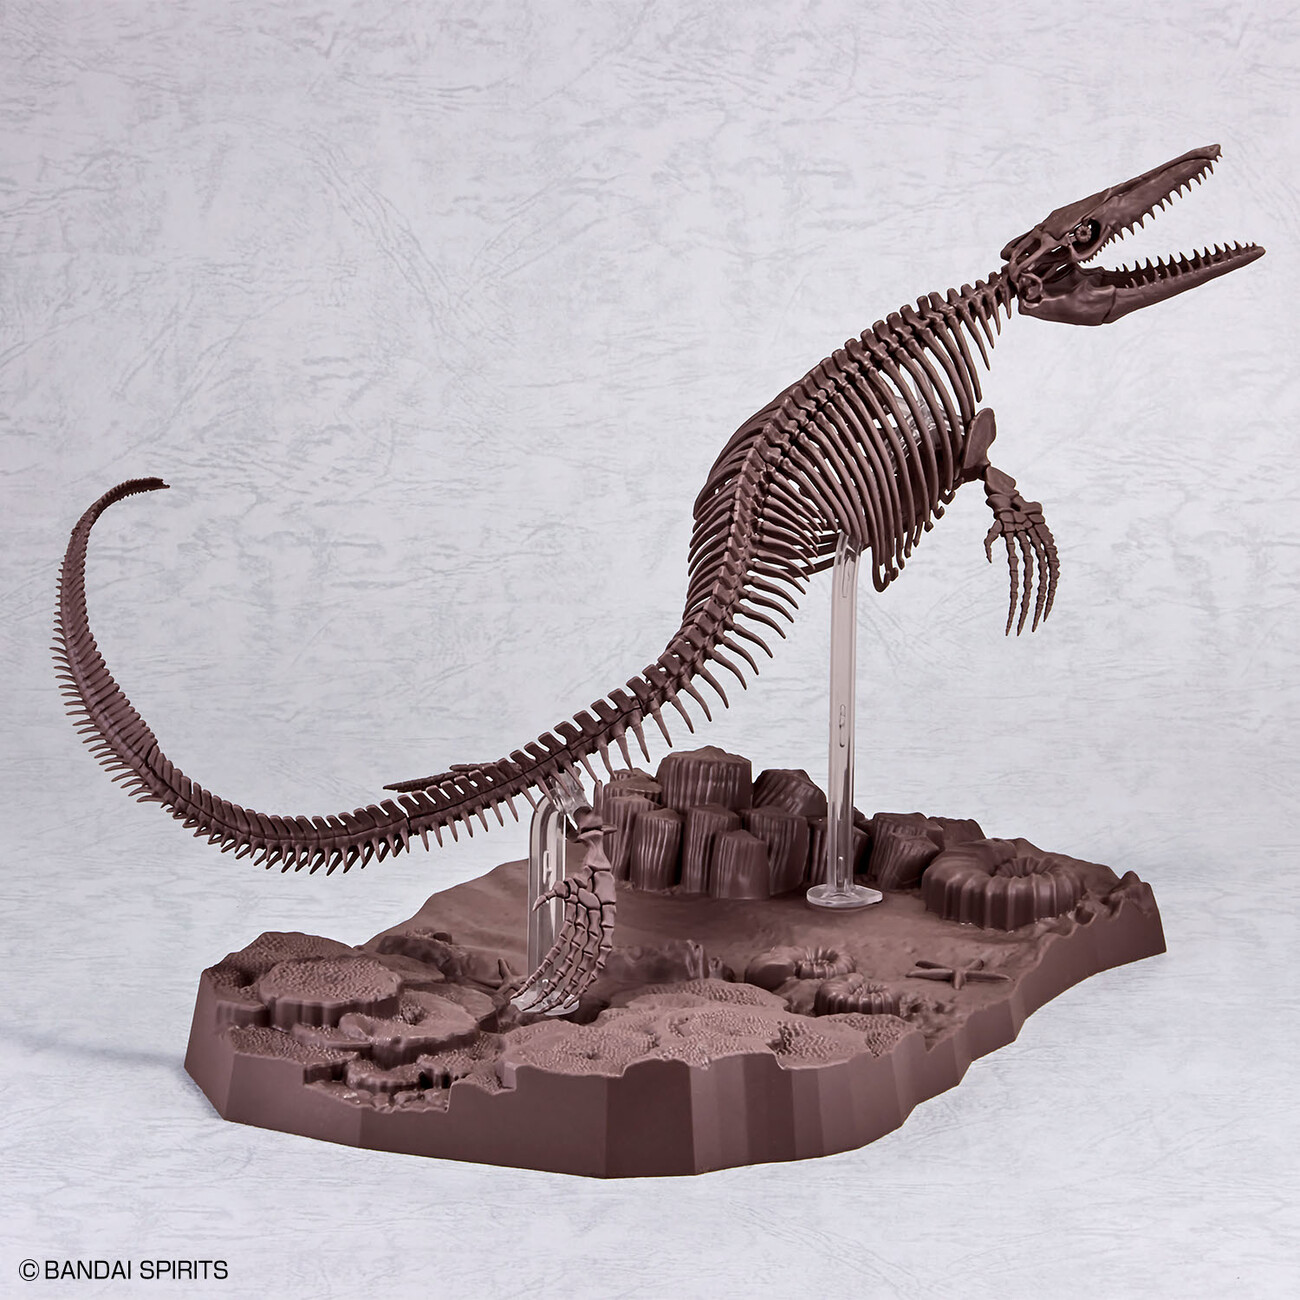 1/32 Imaginary Skeleton モササウルス